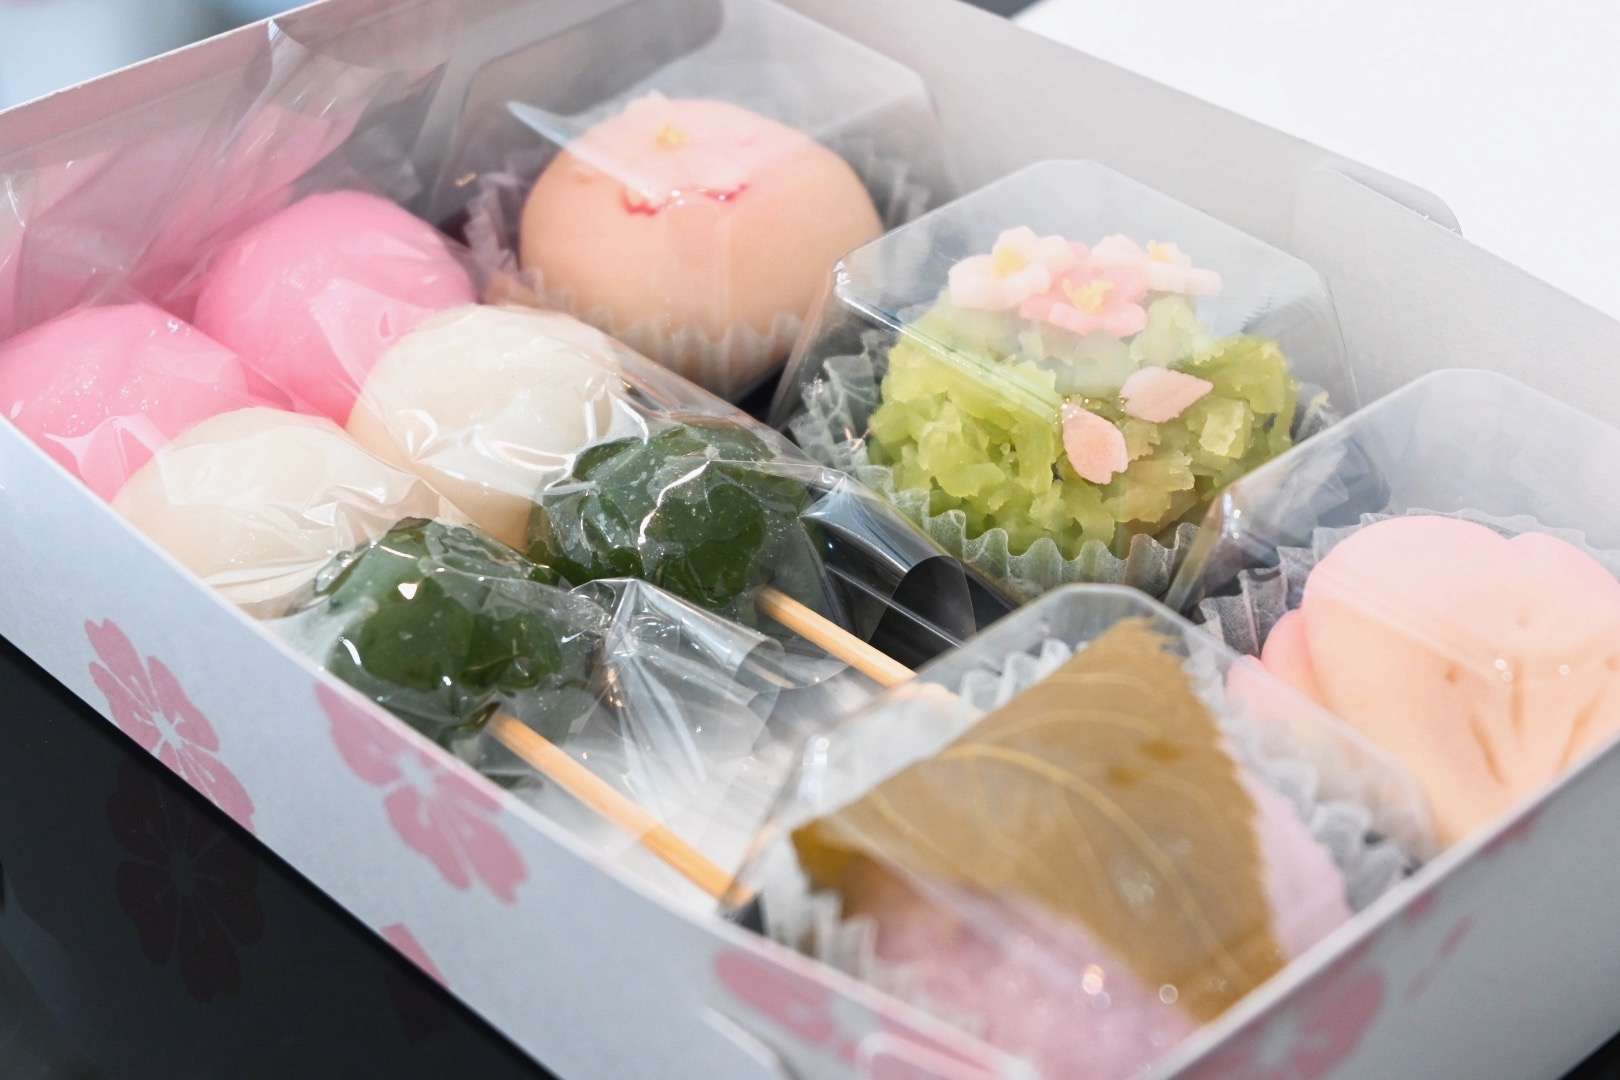 お花見セット販売開始 茨木市 創作和菓子sense 伝統を守りつつ季節を感じられる新感覚のスイーツを提供 茨木市の美味しい創作和菓子店 Sense